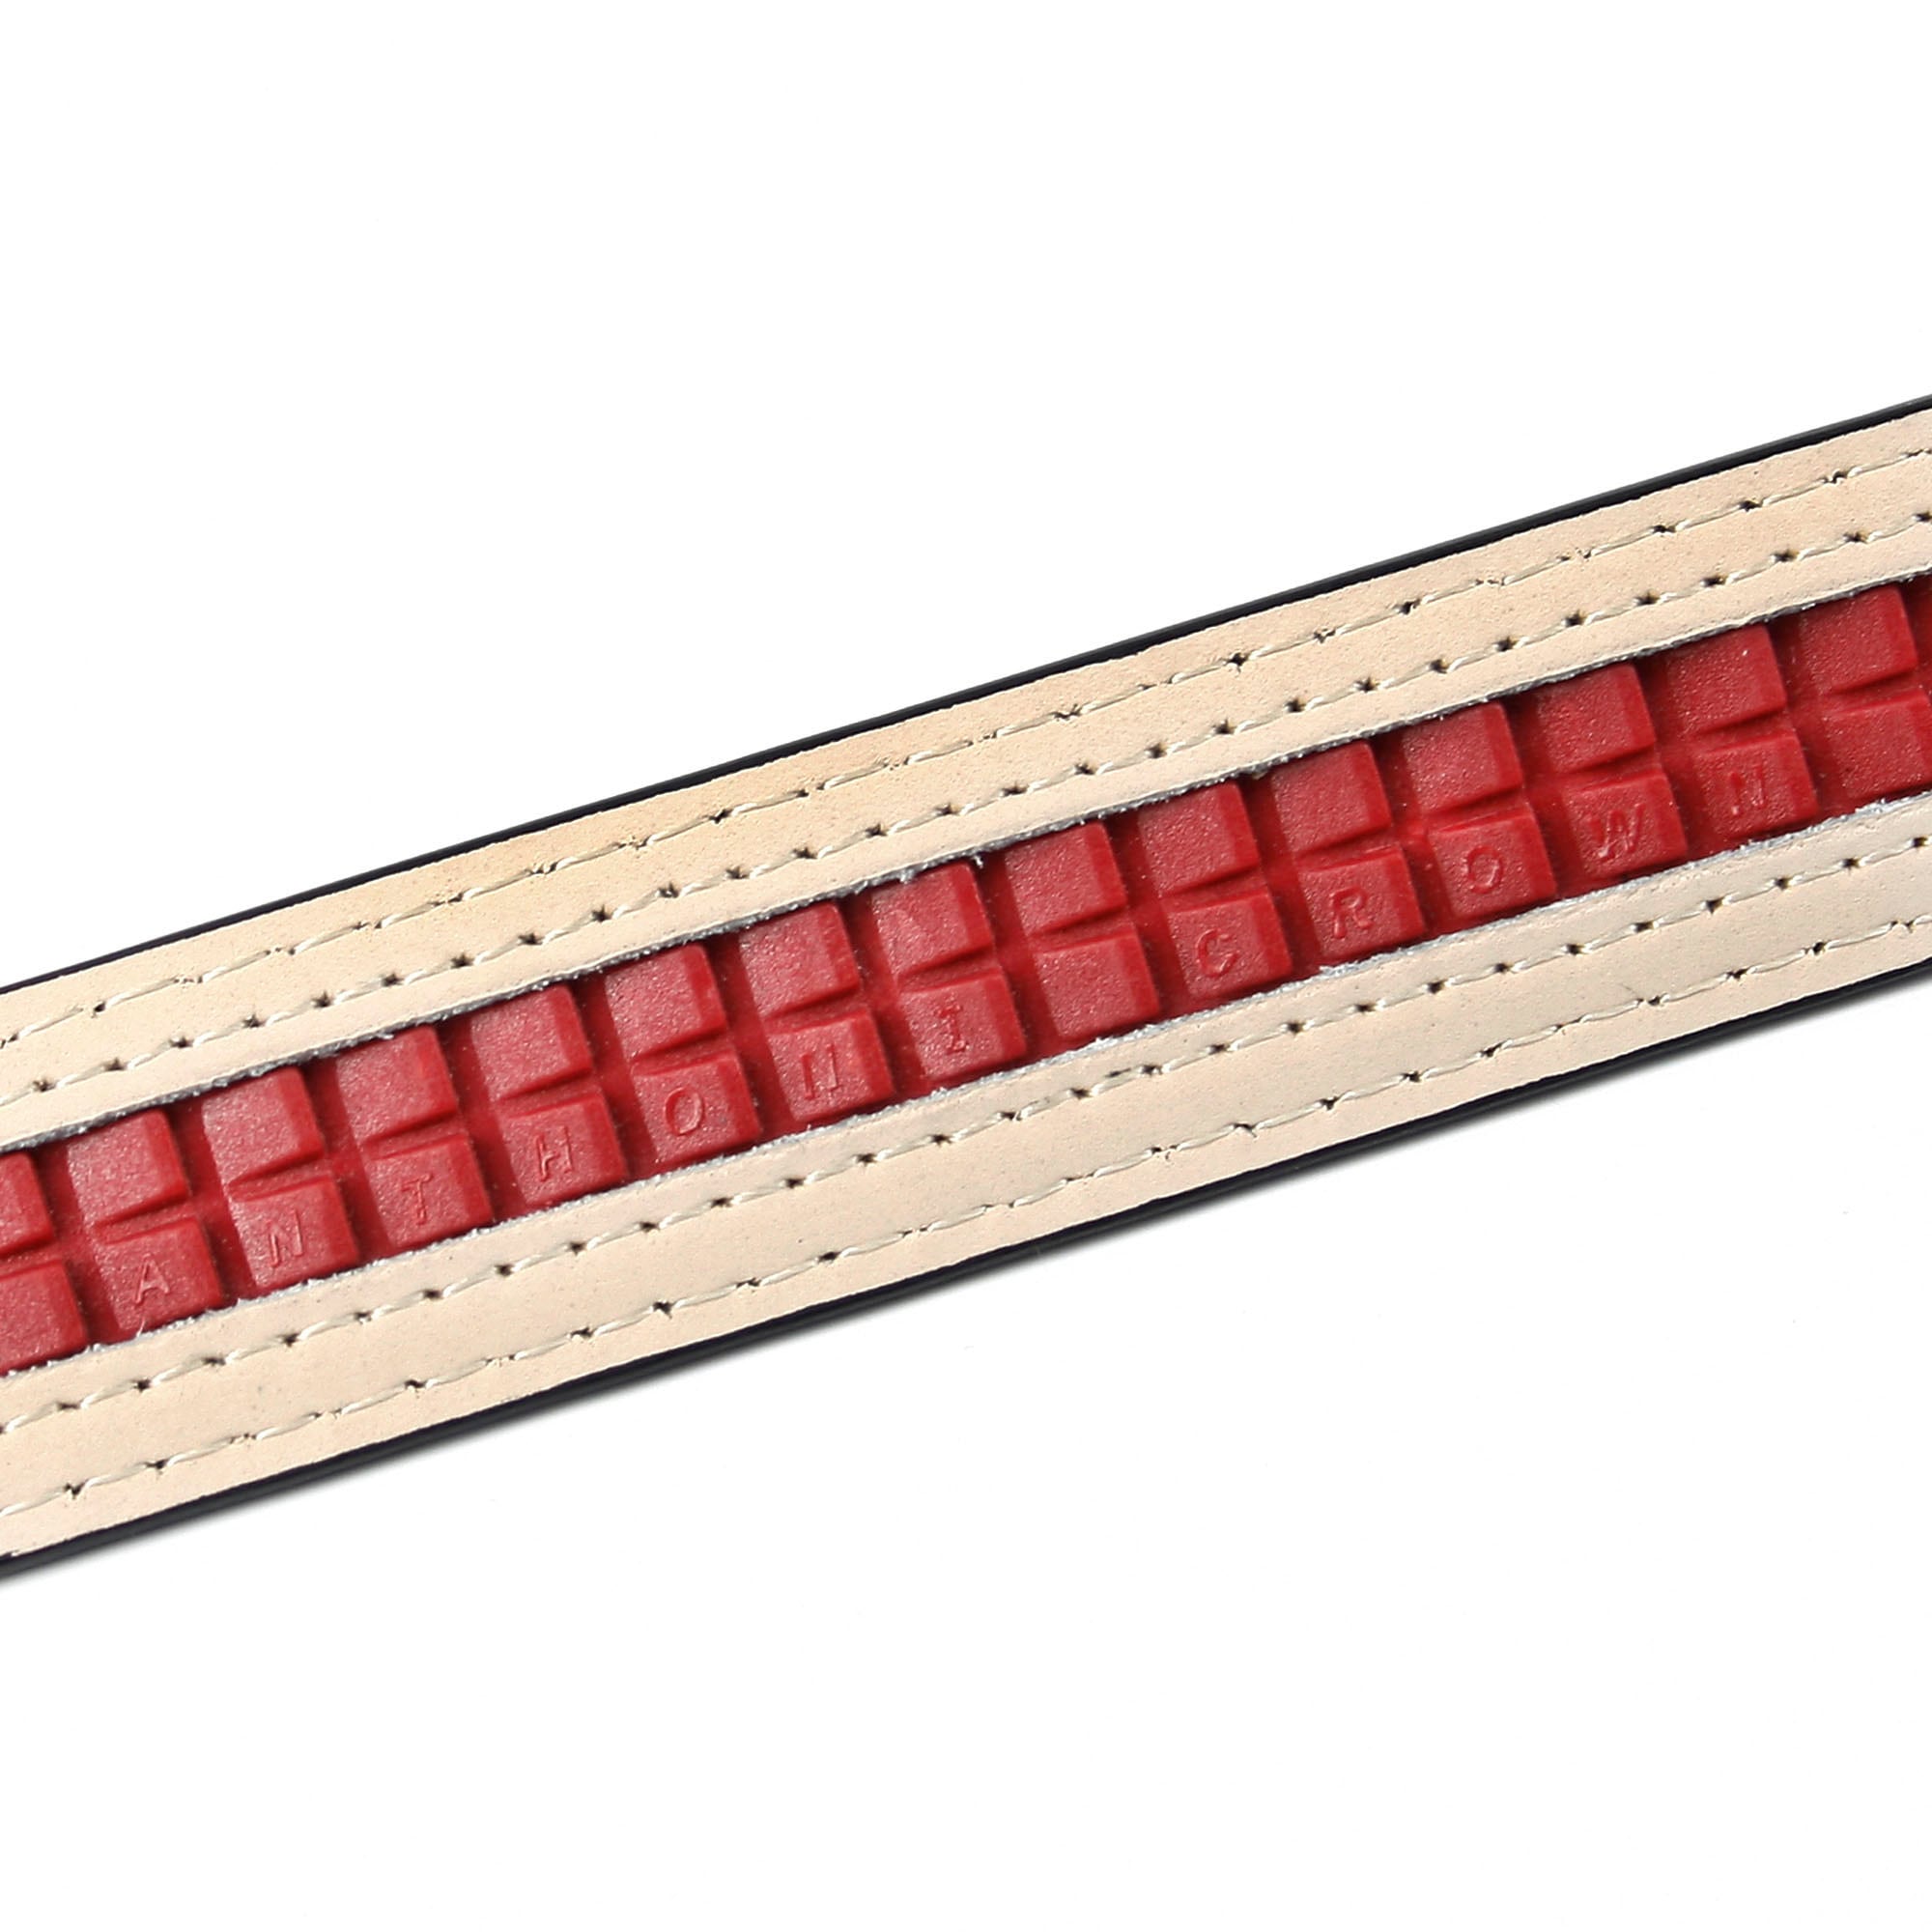 Anthoni Crown Ledergürtel, 2,4 cm femininer Ledergürtel in rot günstig online kaufen